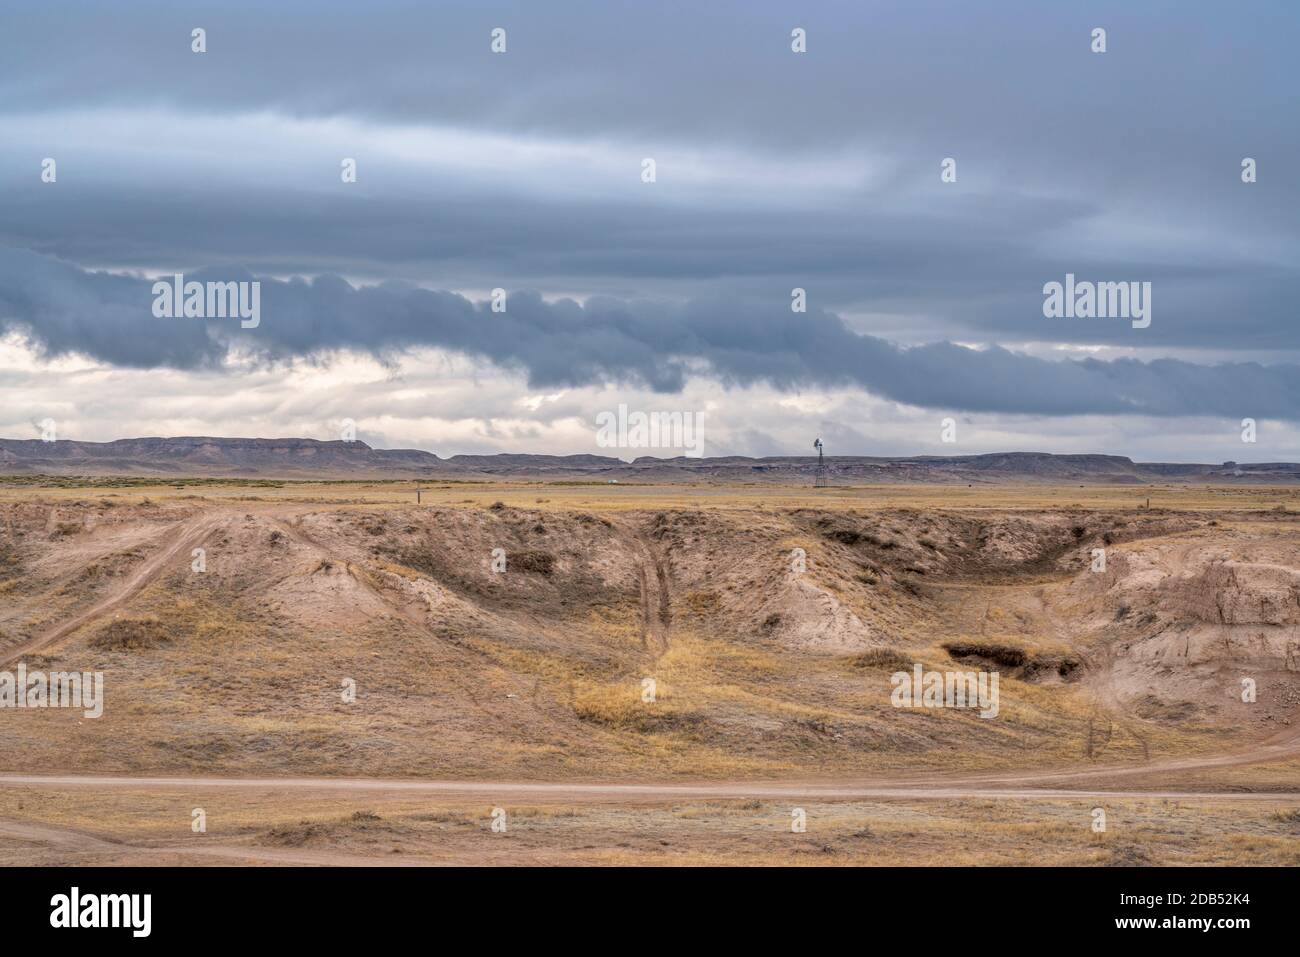 Dunkle stürmische Wolken über der Prärie - Pawnee National Grasland im Norden Colorados nahe der Grenze zu Wyoming in der Winter- oder Frühfrühlingslandschaft Stockfoto